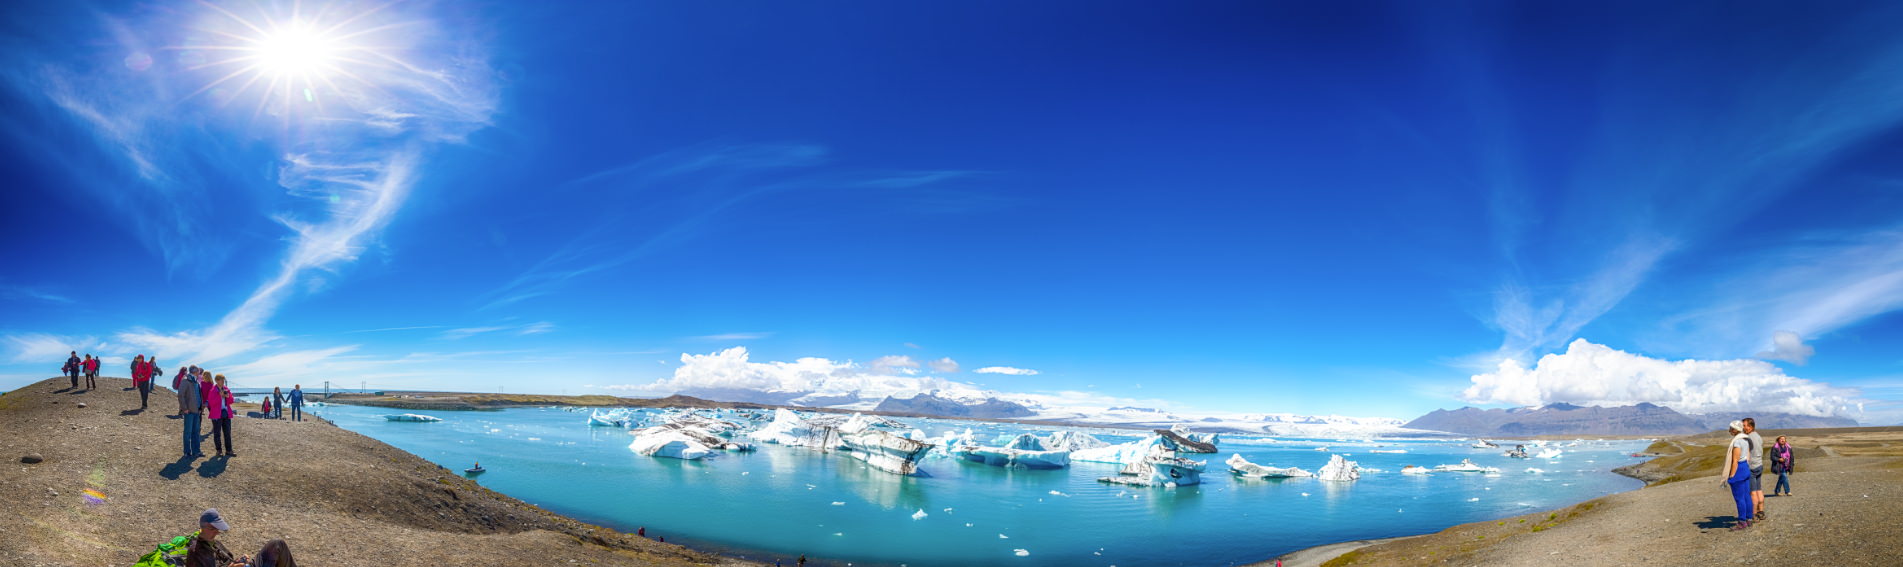 [2017冰島旅程] 冰島自助第 03 天：霍夫 - 傑古沙龍冰河湖 - 斯卡夫塔山冰川健行